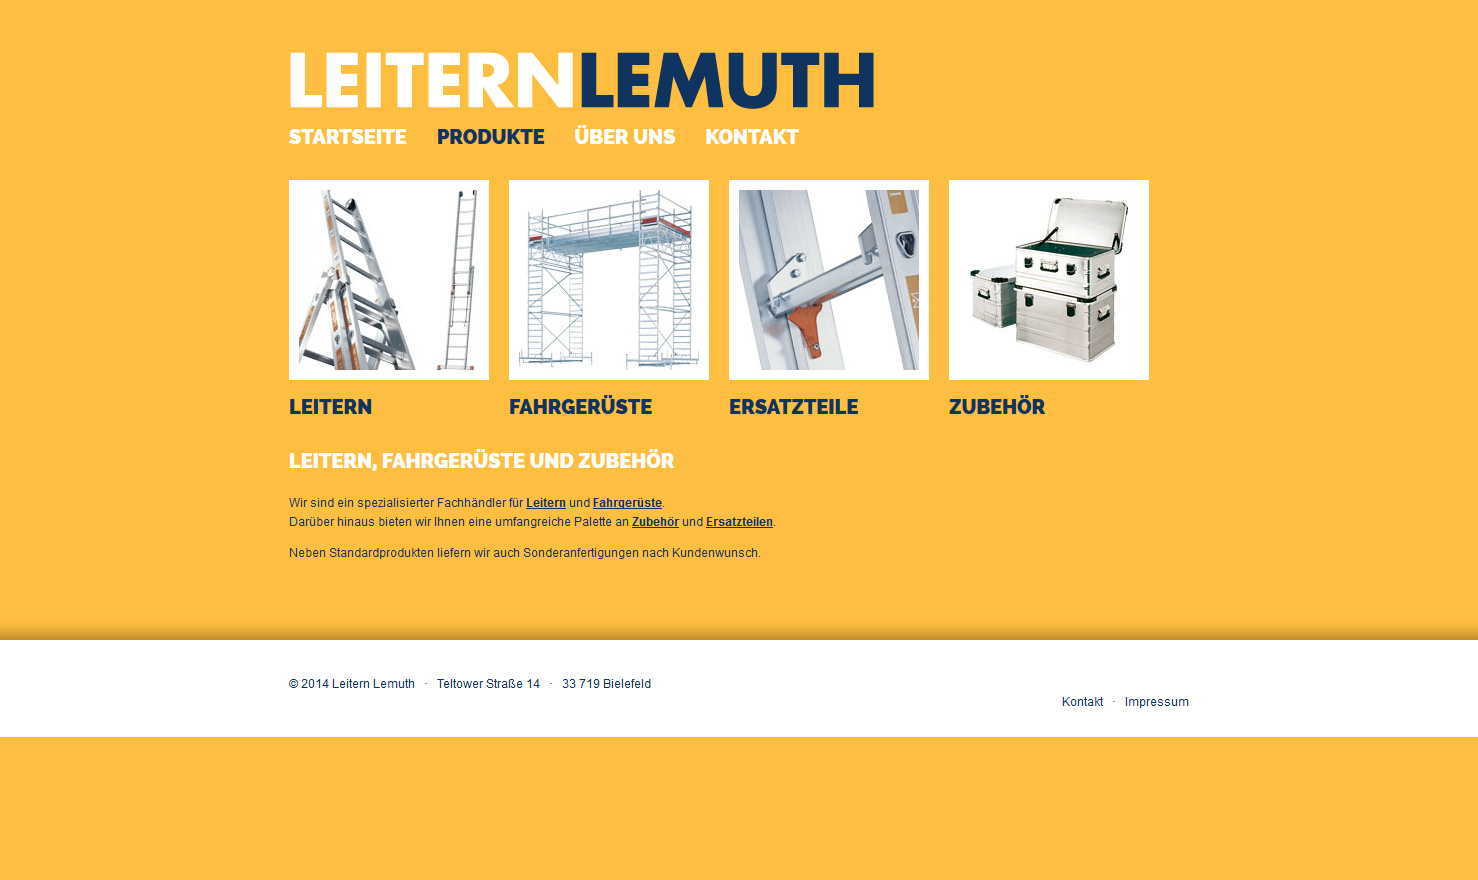 Leitern Lemuth